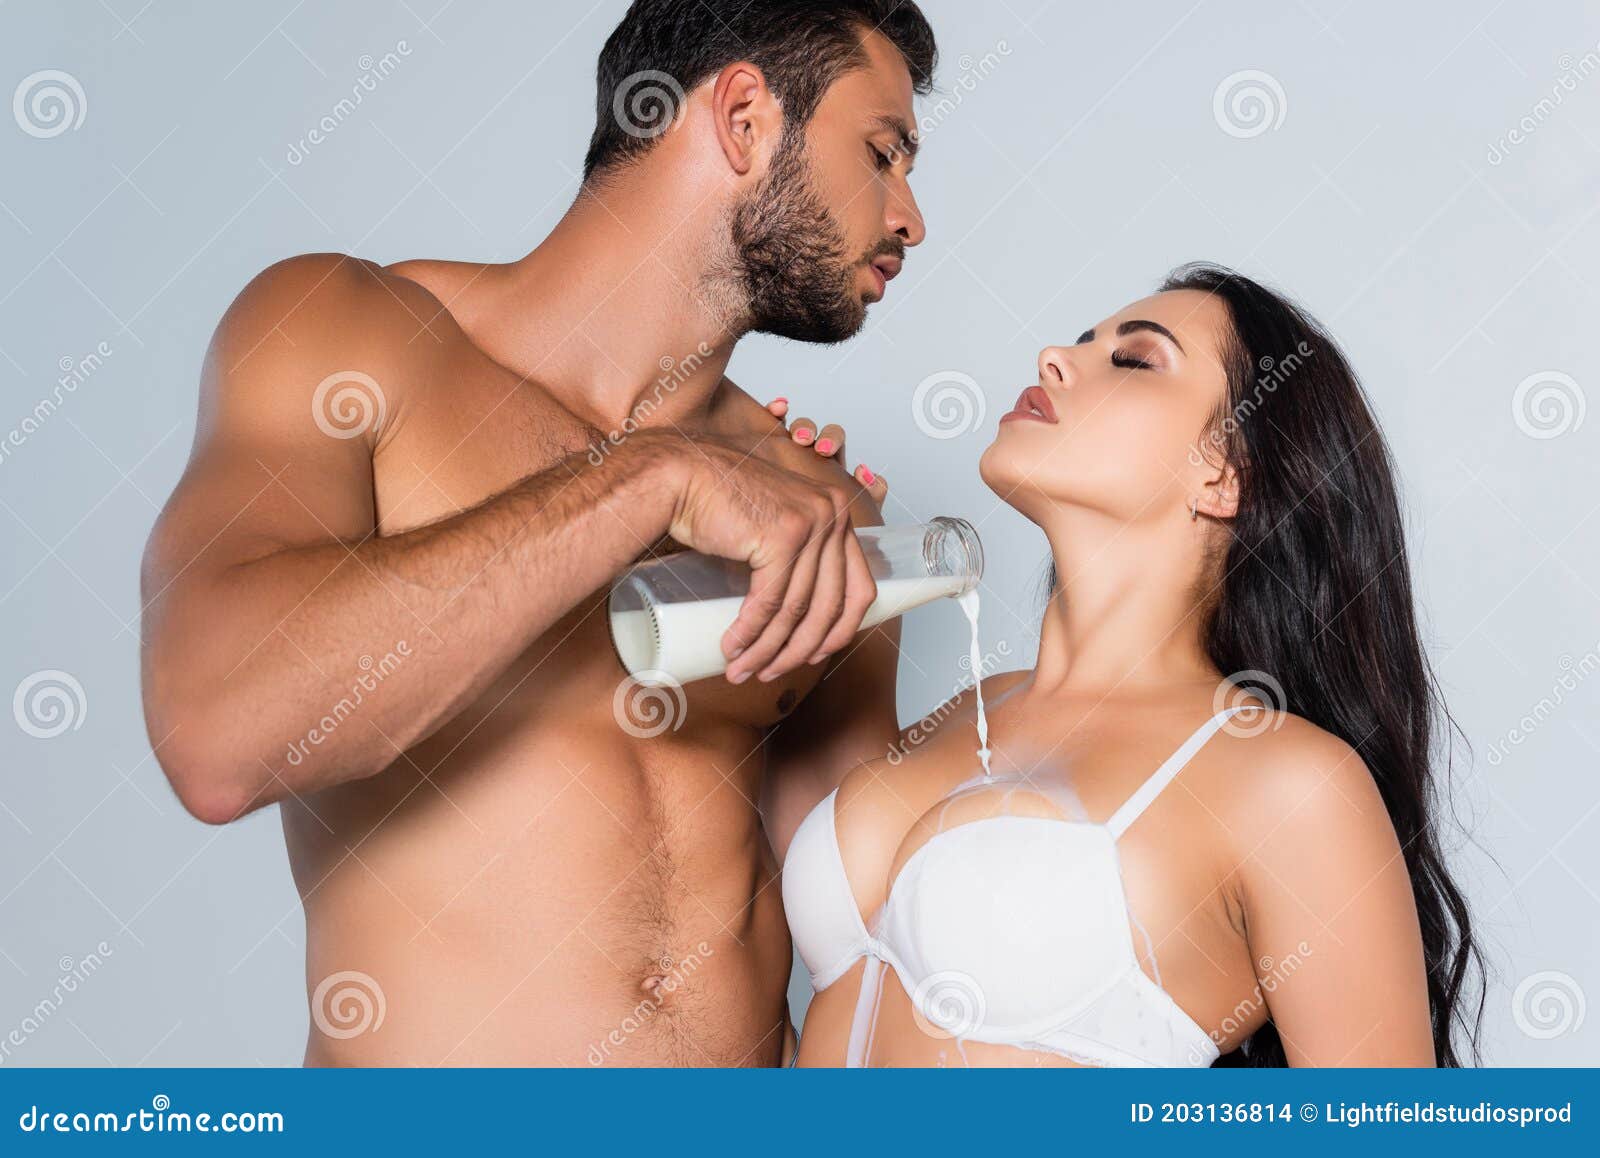 фото мужчин с женскими грудями фото 101